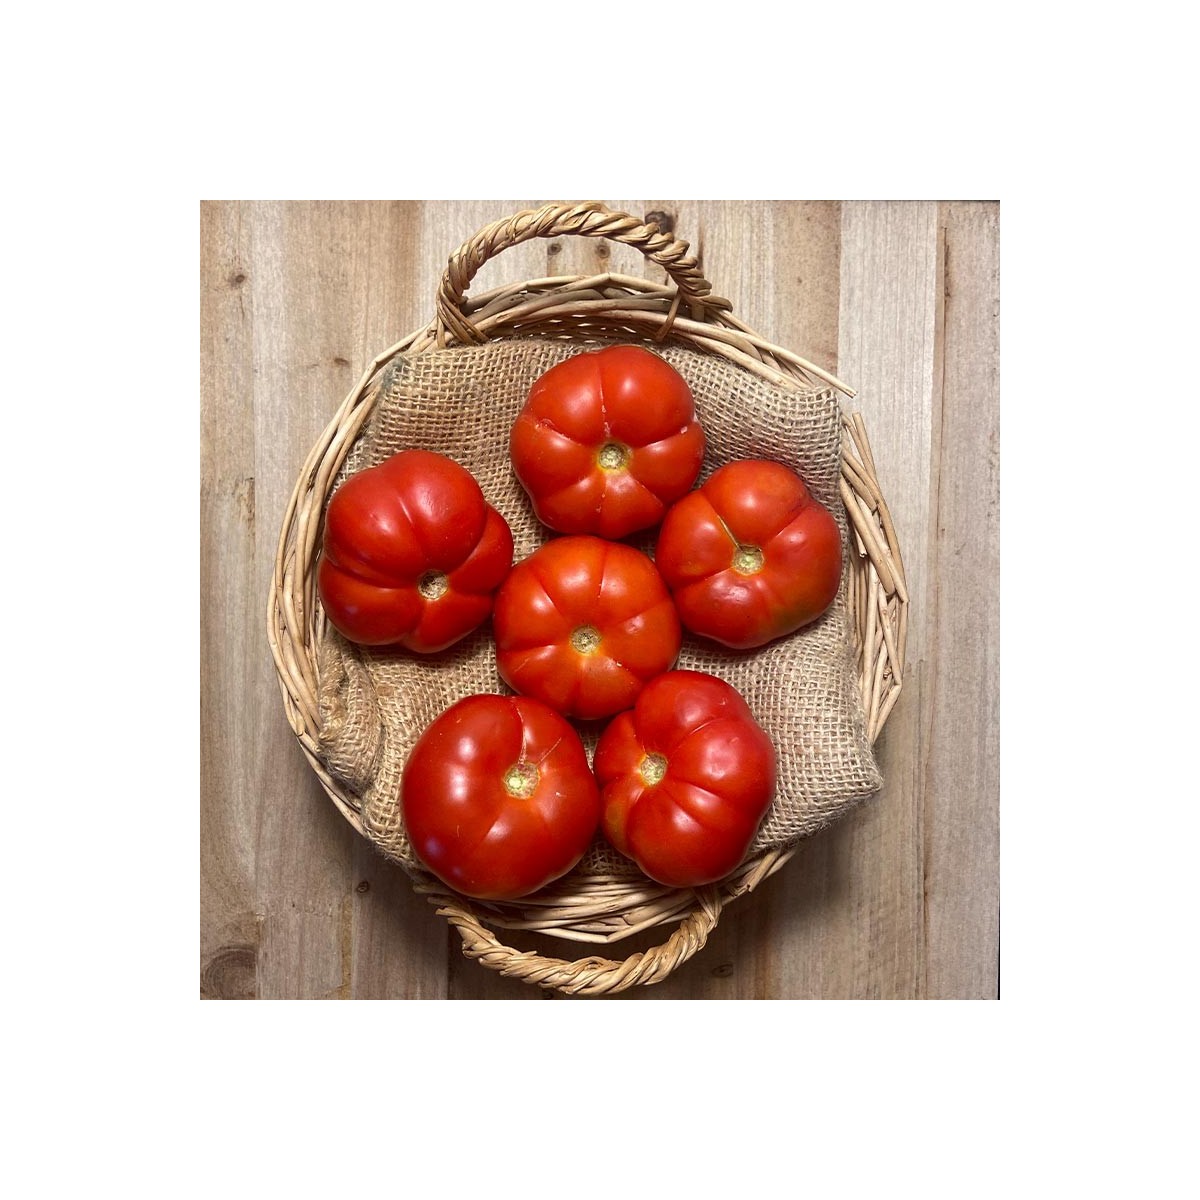 Tomates Raf Maduro - - Selección de Tomates -1- Lo mejor de la fruta